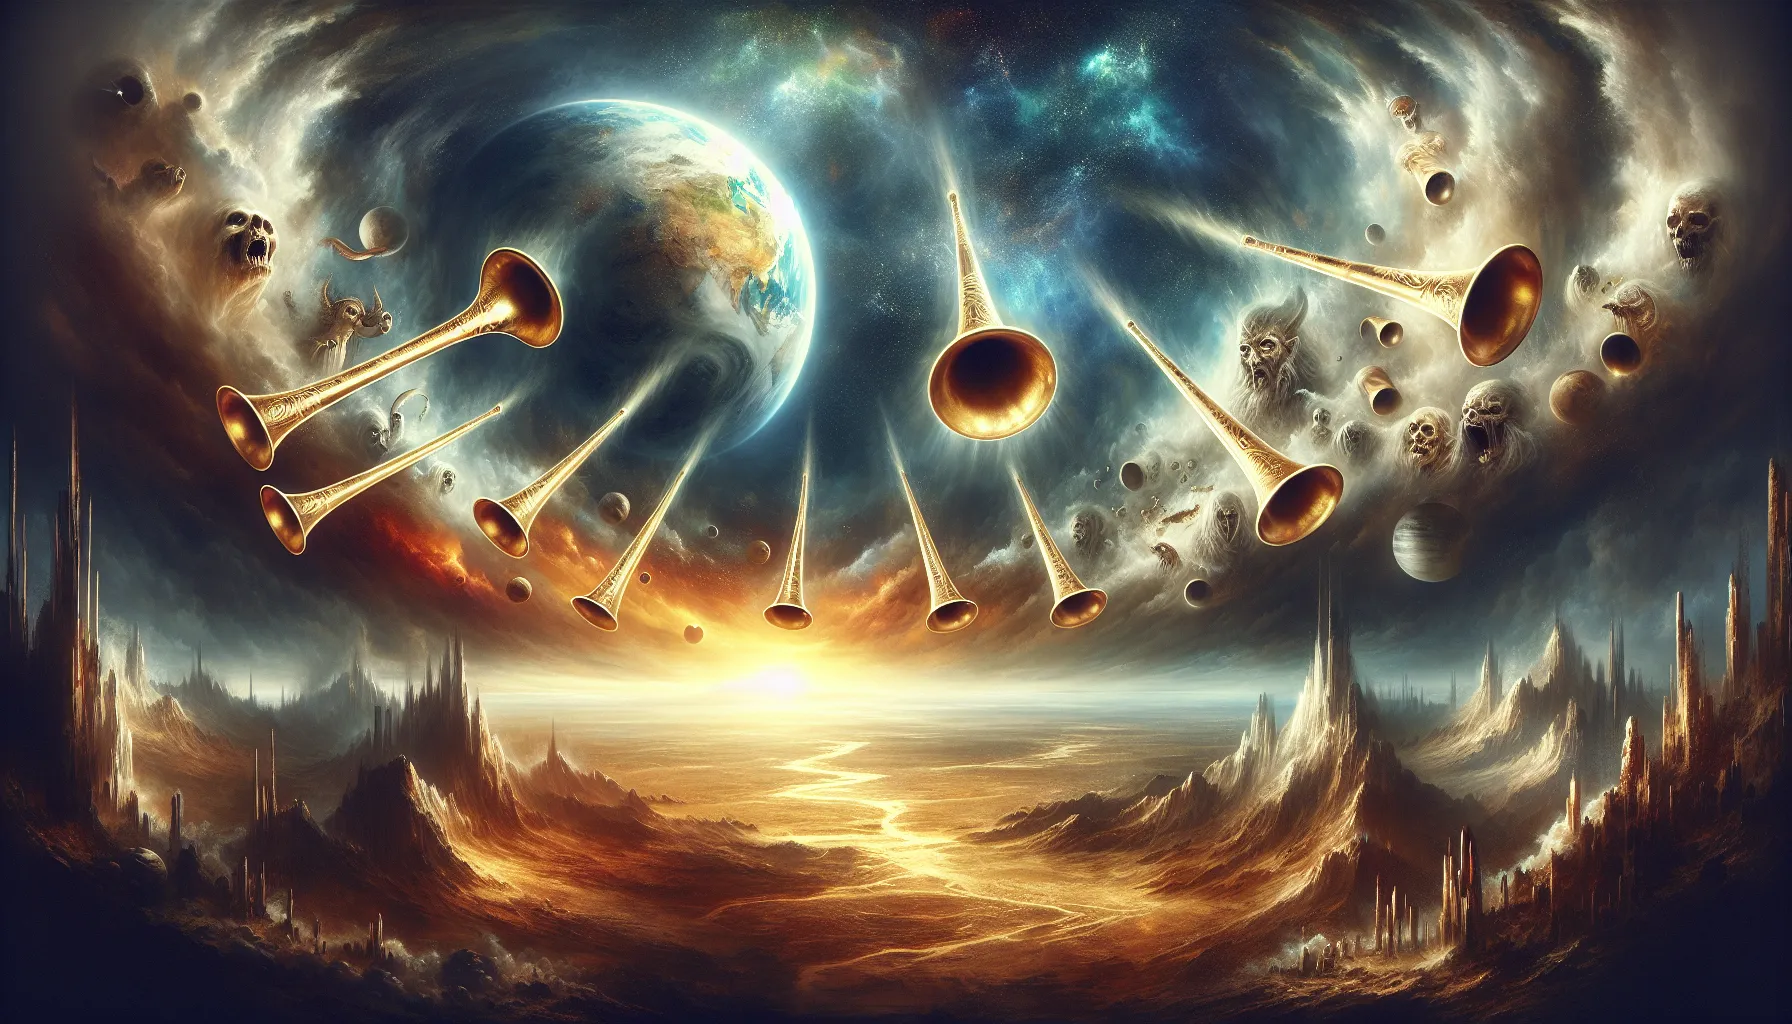 Representación gráfica de las siete trompetas del Apocalipsis según la Biblia